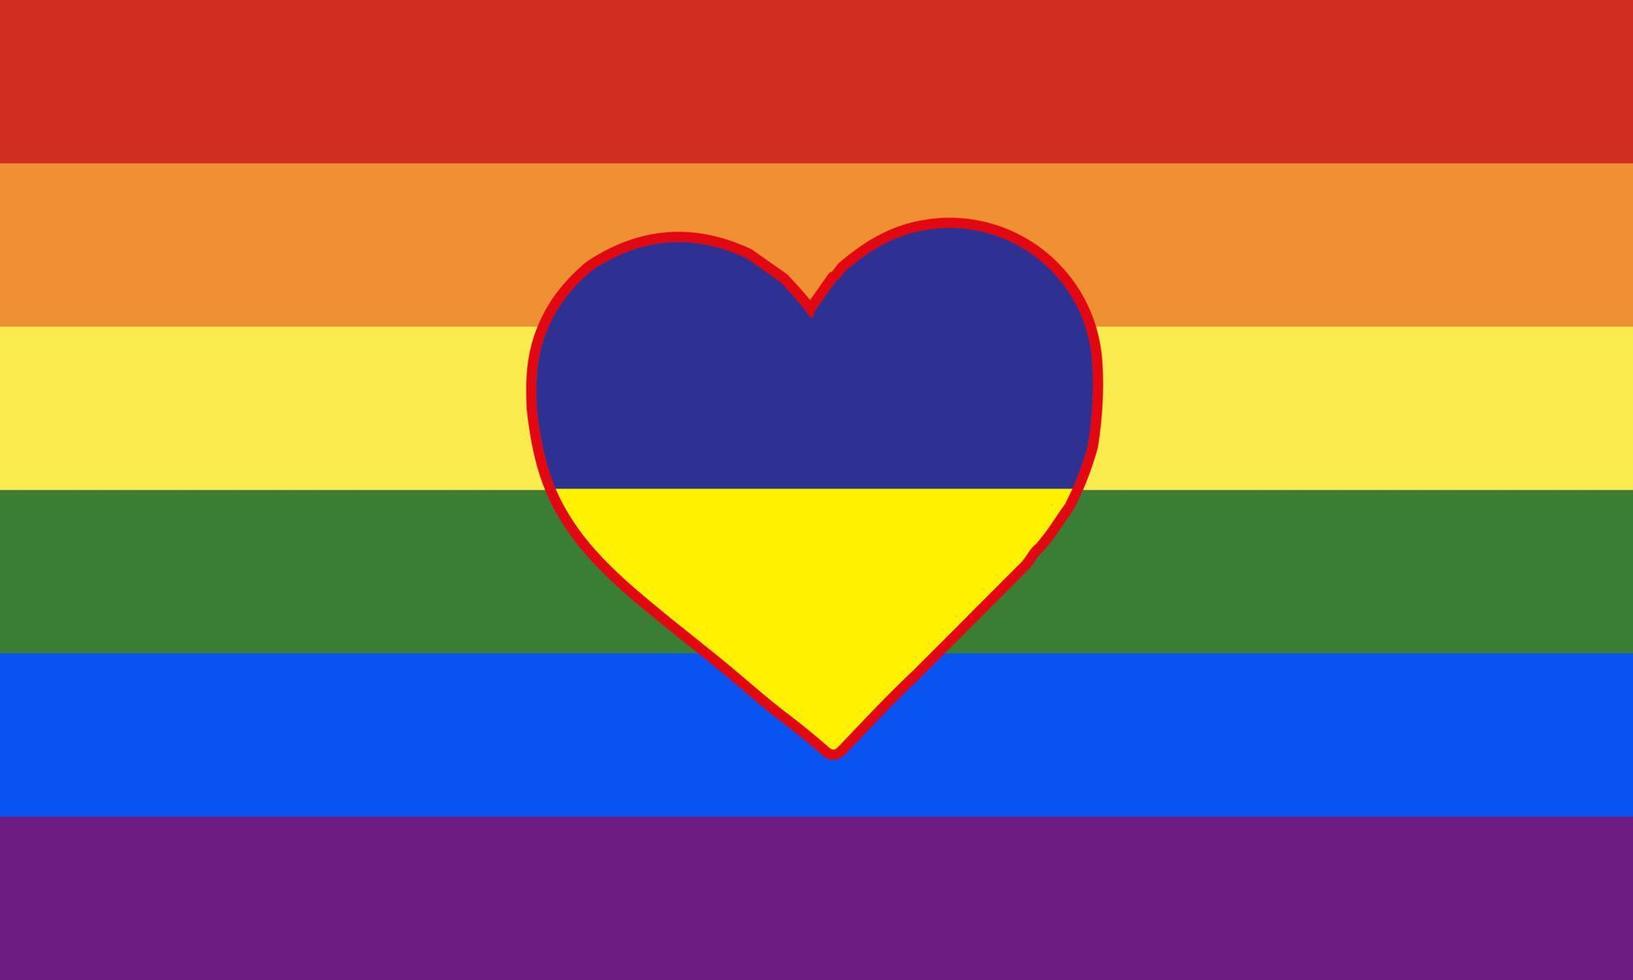 corazón pintado con los colores de la bandera de la comunidad lgbt en la bandera de ucrania. ilustración vectorial de un corazón de arco iris sobre un fondo azul-amarillo. vector